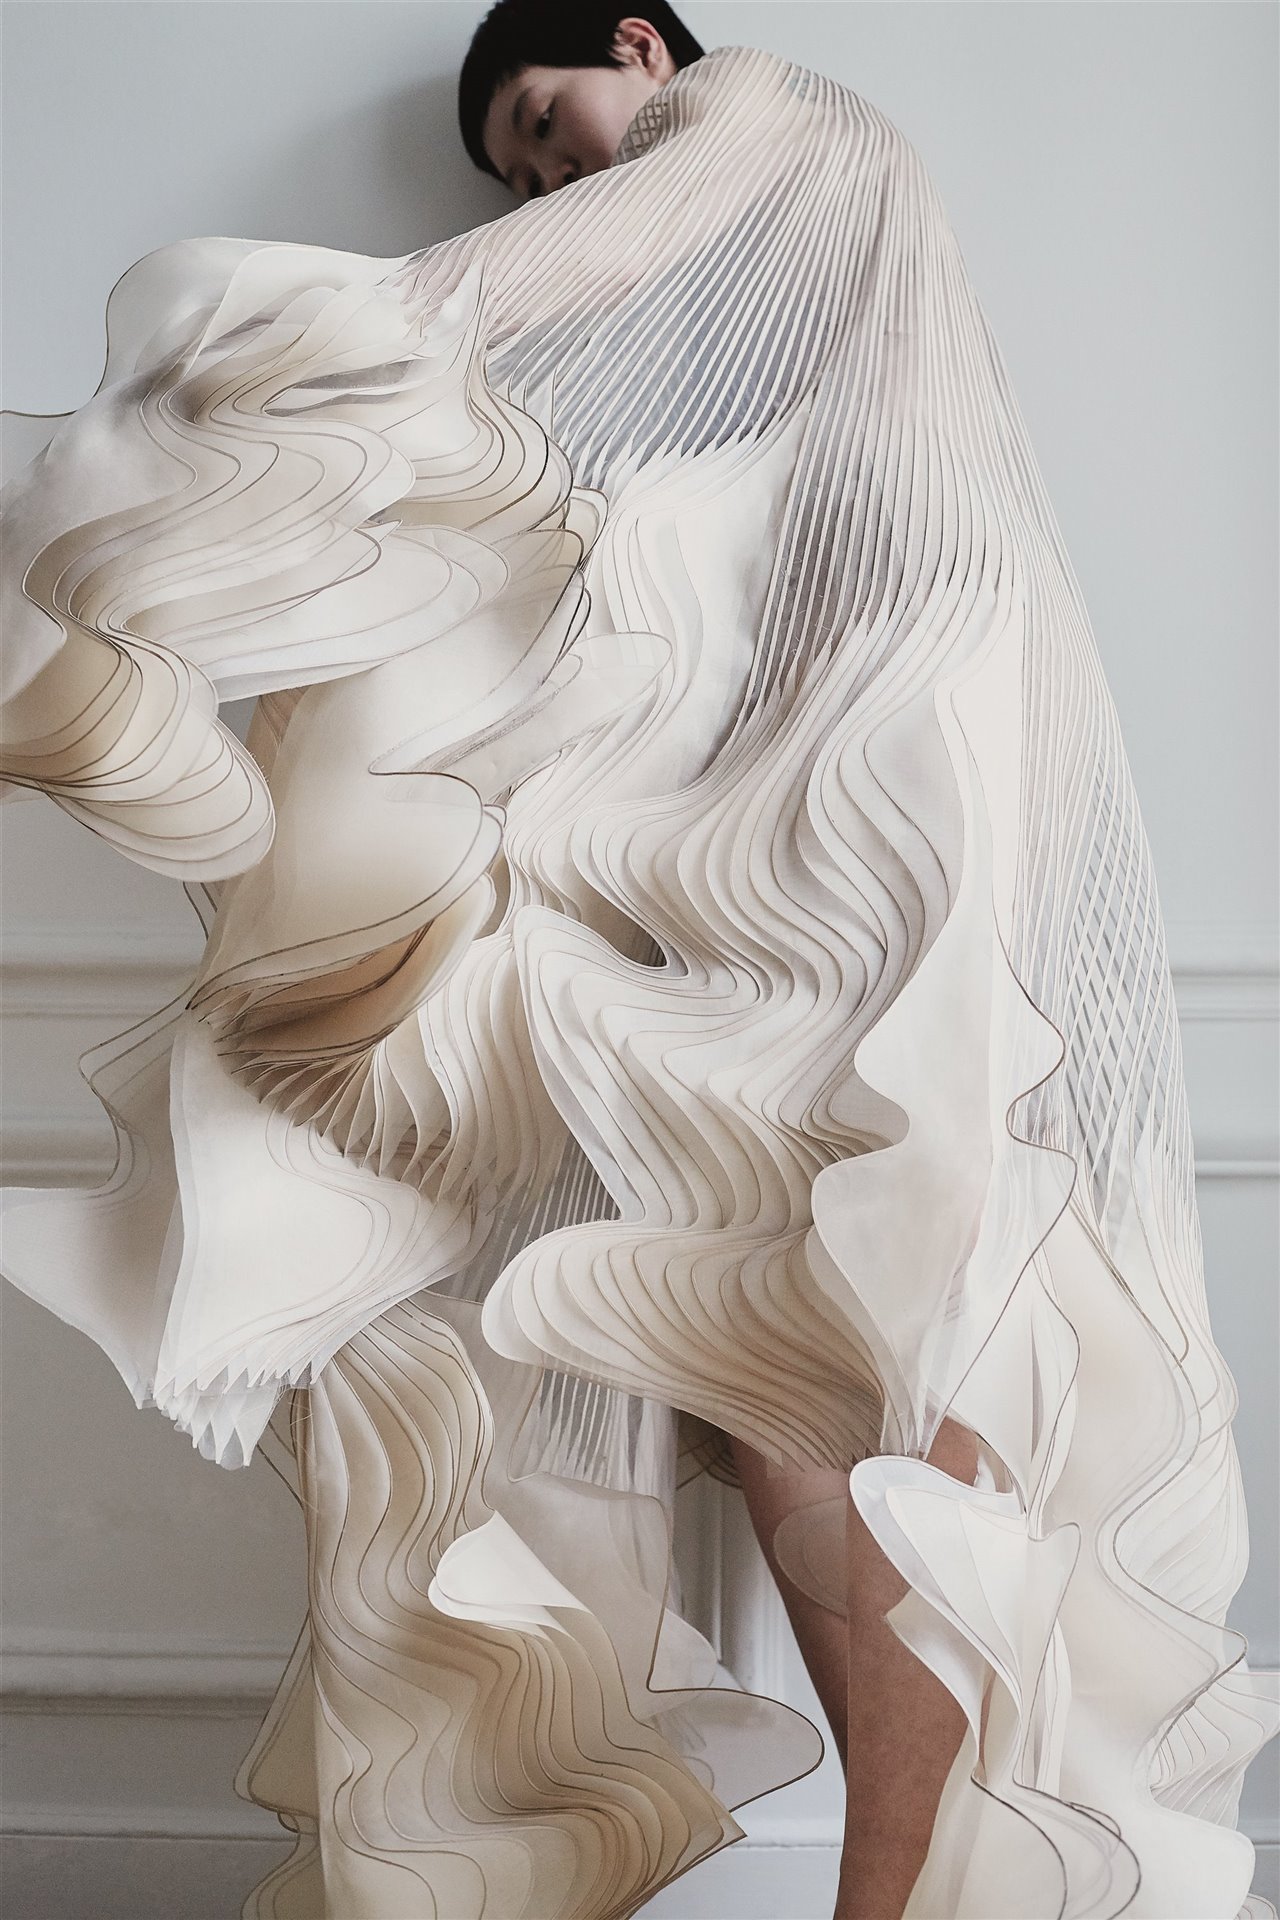 Los diseños de Iris van Herpen logran ese delicado equilibrio entre artesanía y tecnología, generando una forma muy particular de hacer Alta Costura.  